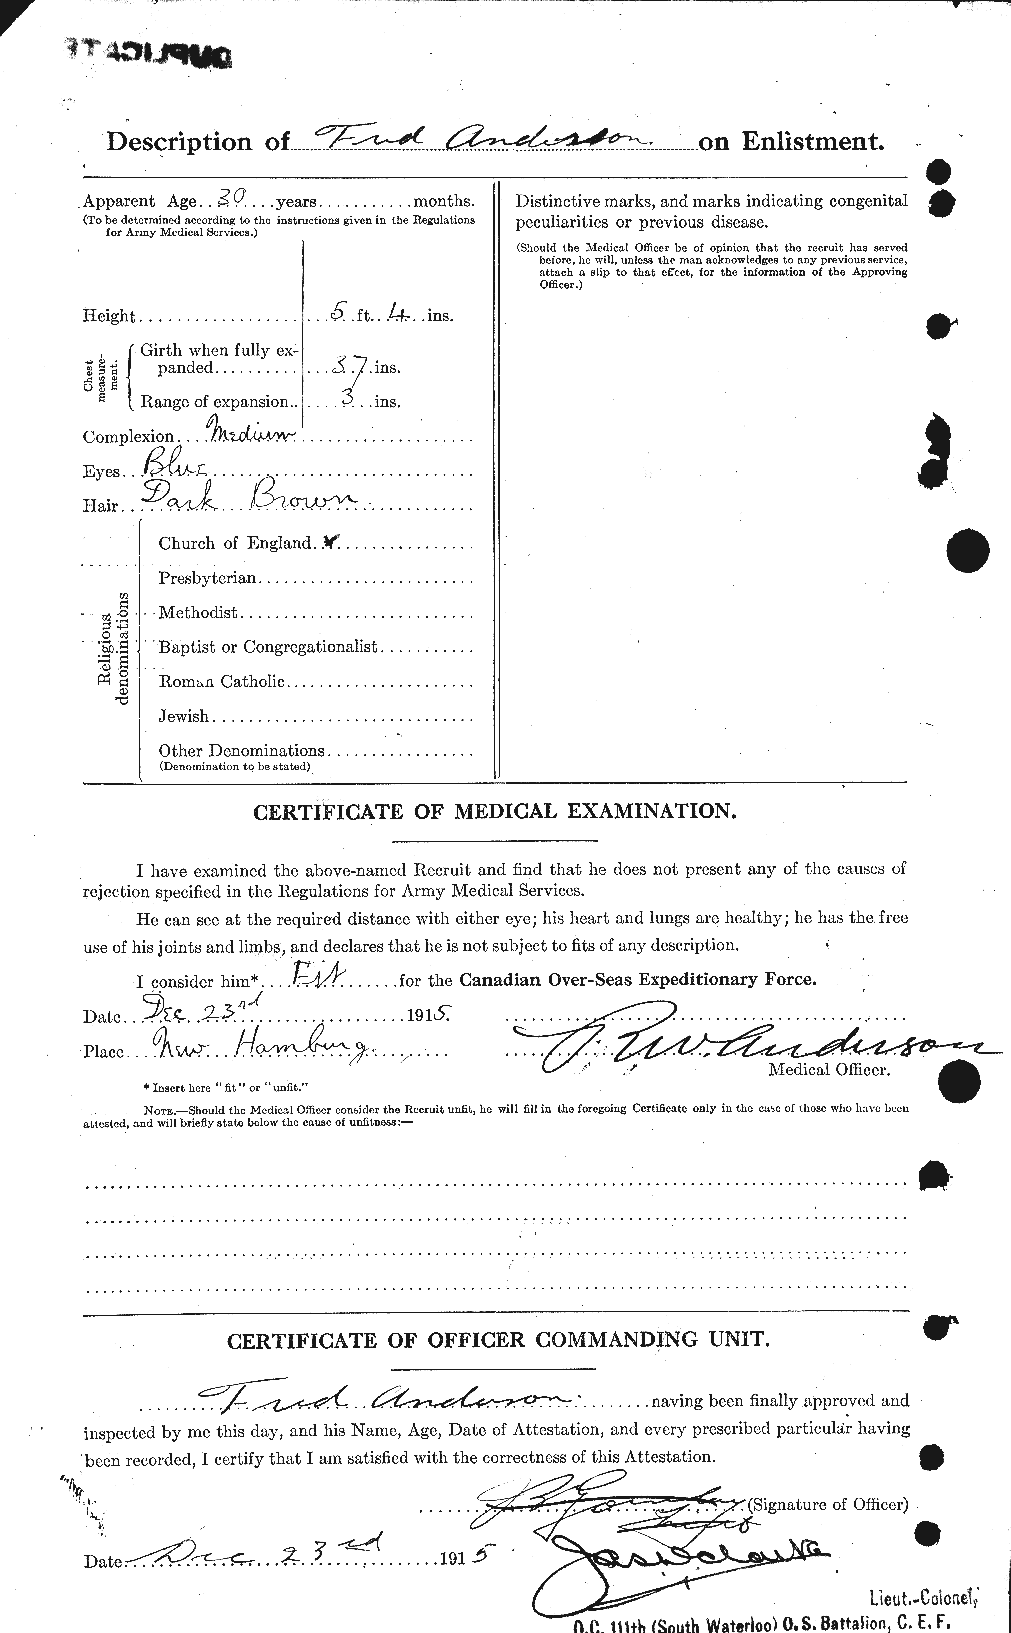 Dossiers du Personnel de la Première Guerre mondiale - CEC 209839b